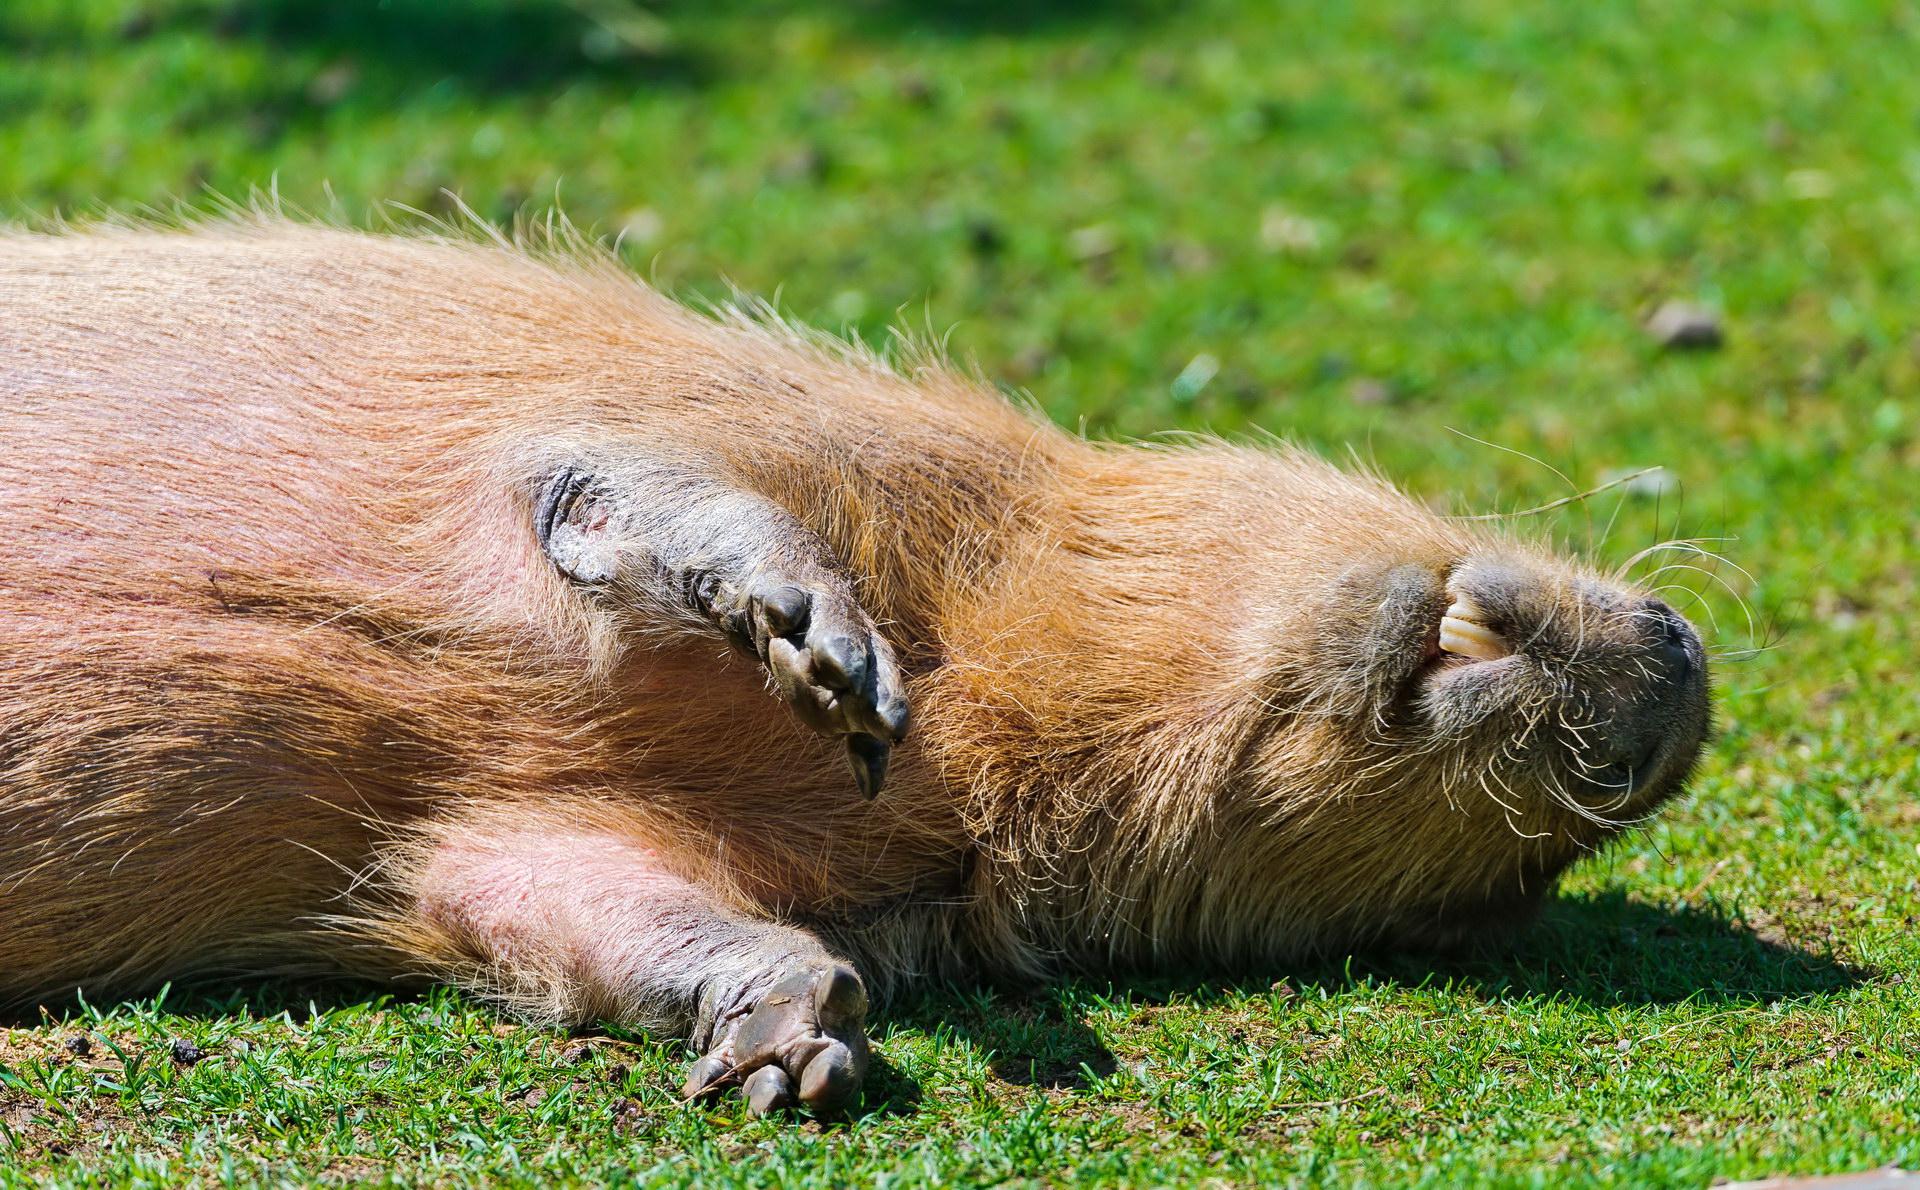 Capybara isinmi